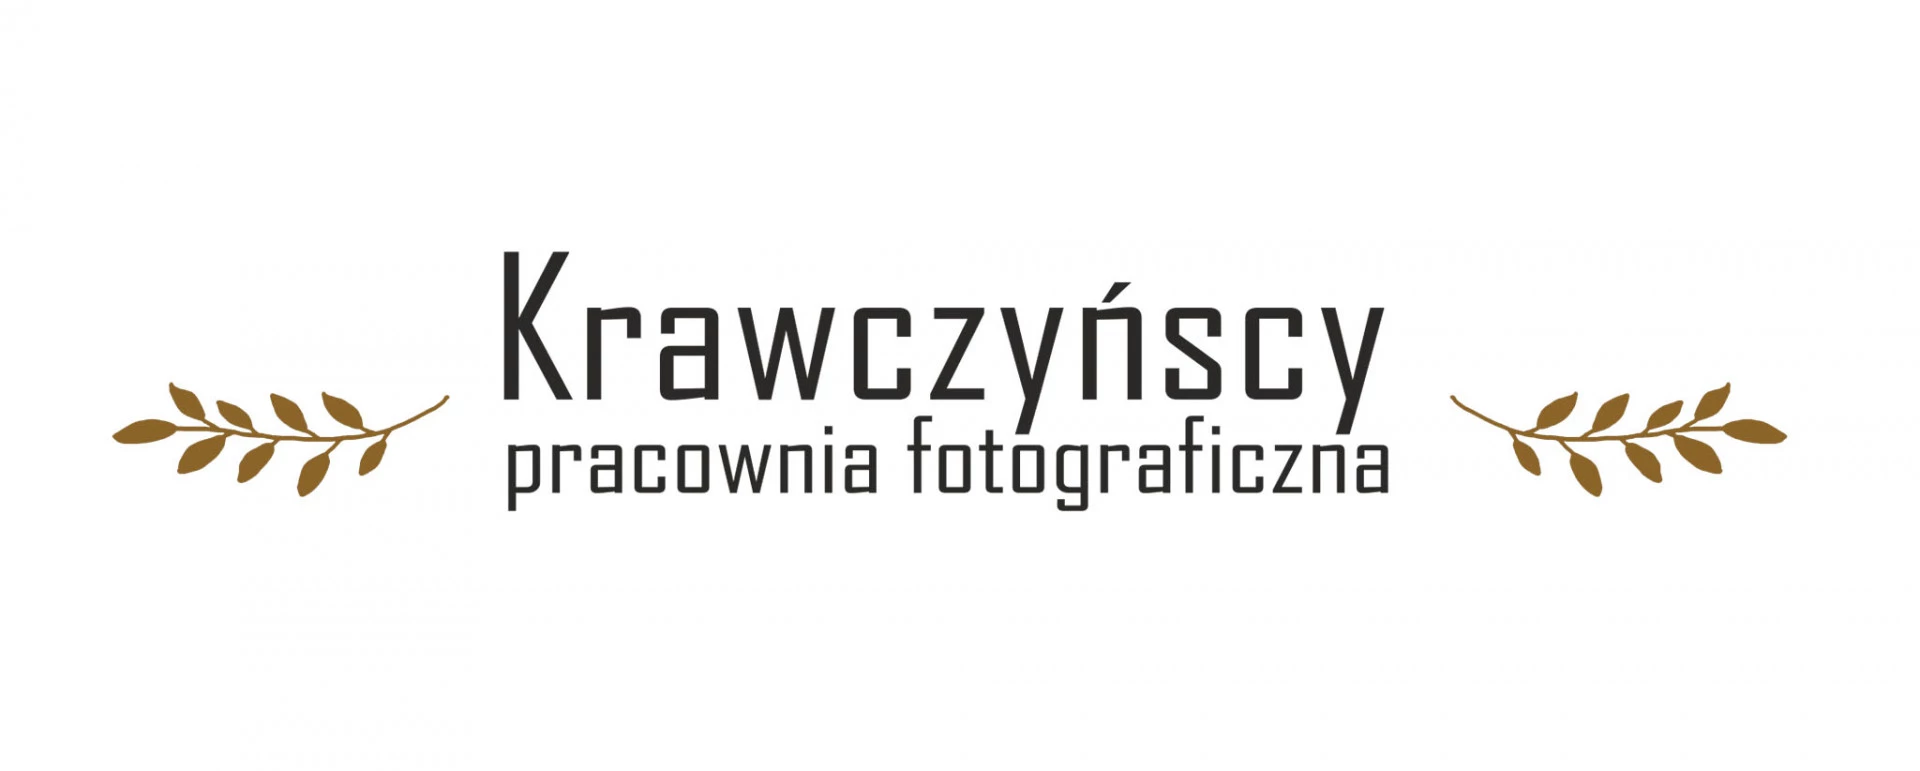 portfolio zdjecia znany fotograf krawczynscy-pracownia-fotograficzna